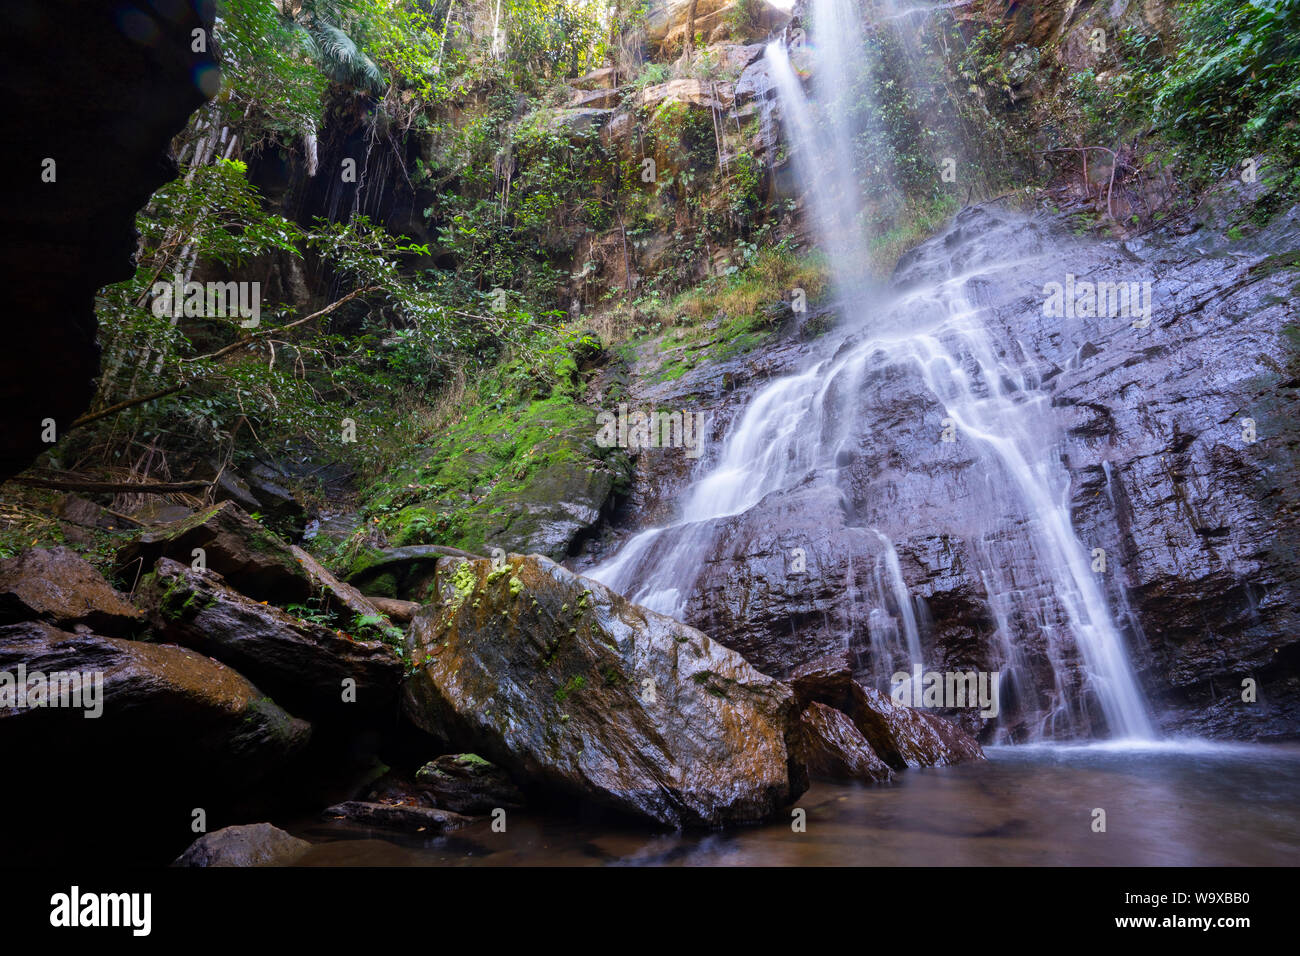 Serie von verschiedenen Winkeln der Abade cachoeira (Wasserfall) in Pirénopolis, Goias, Brasilien Stockfoto